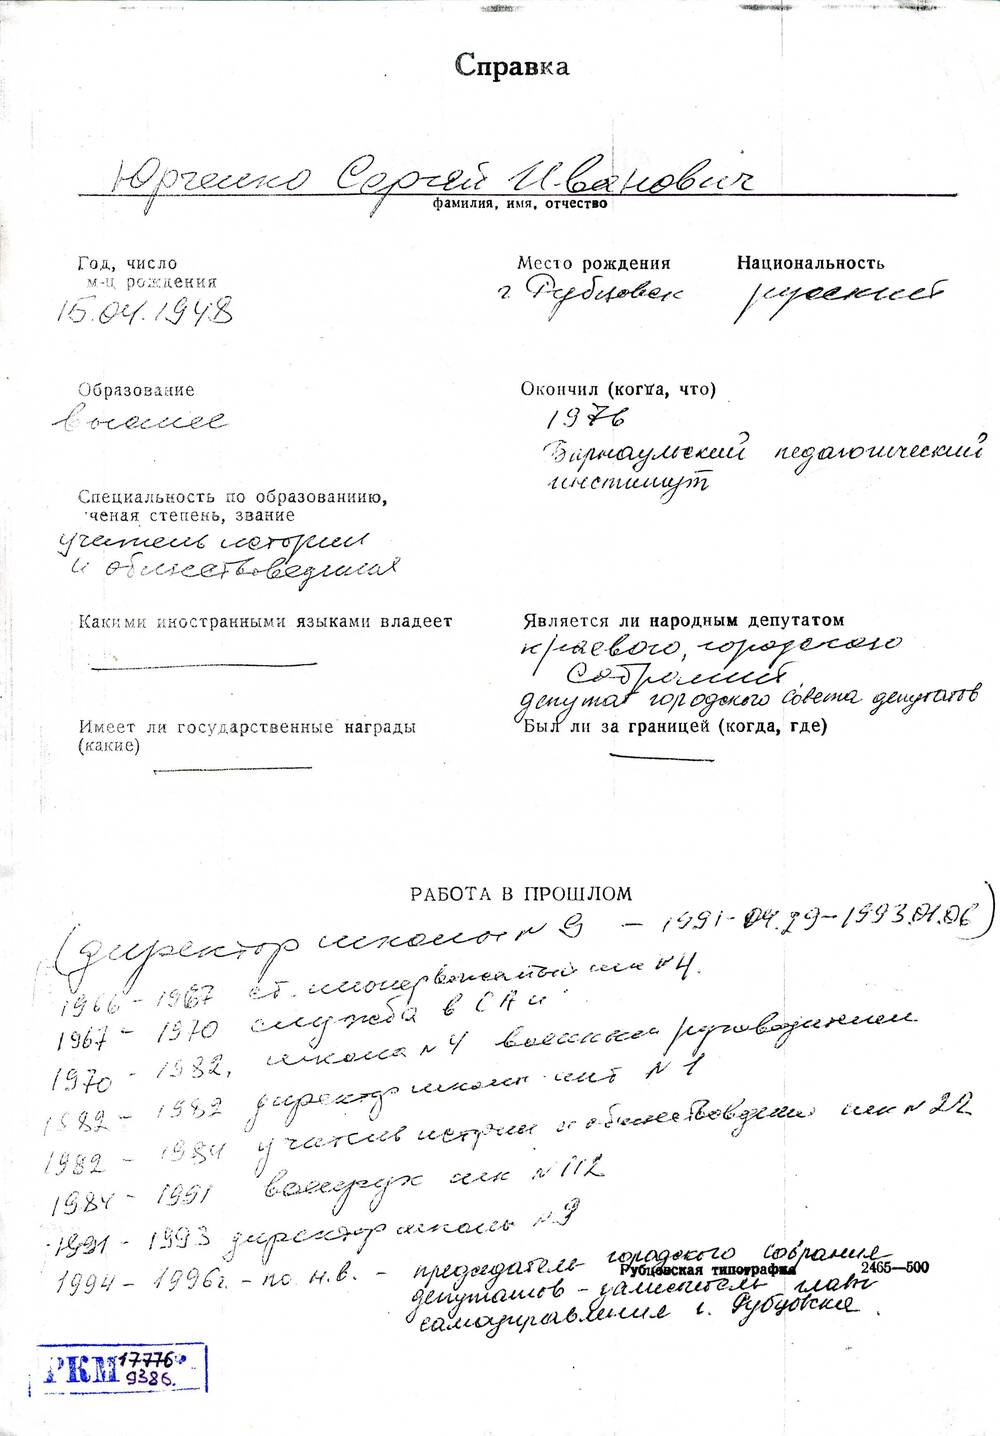 Автобиография Юрченко Сергея Ивановича, 1948 года рождения. Ксерокопия